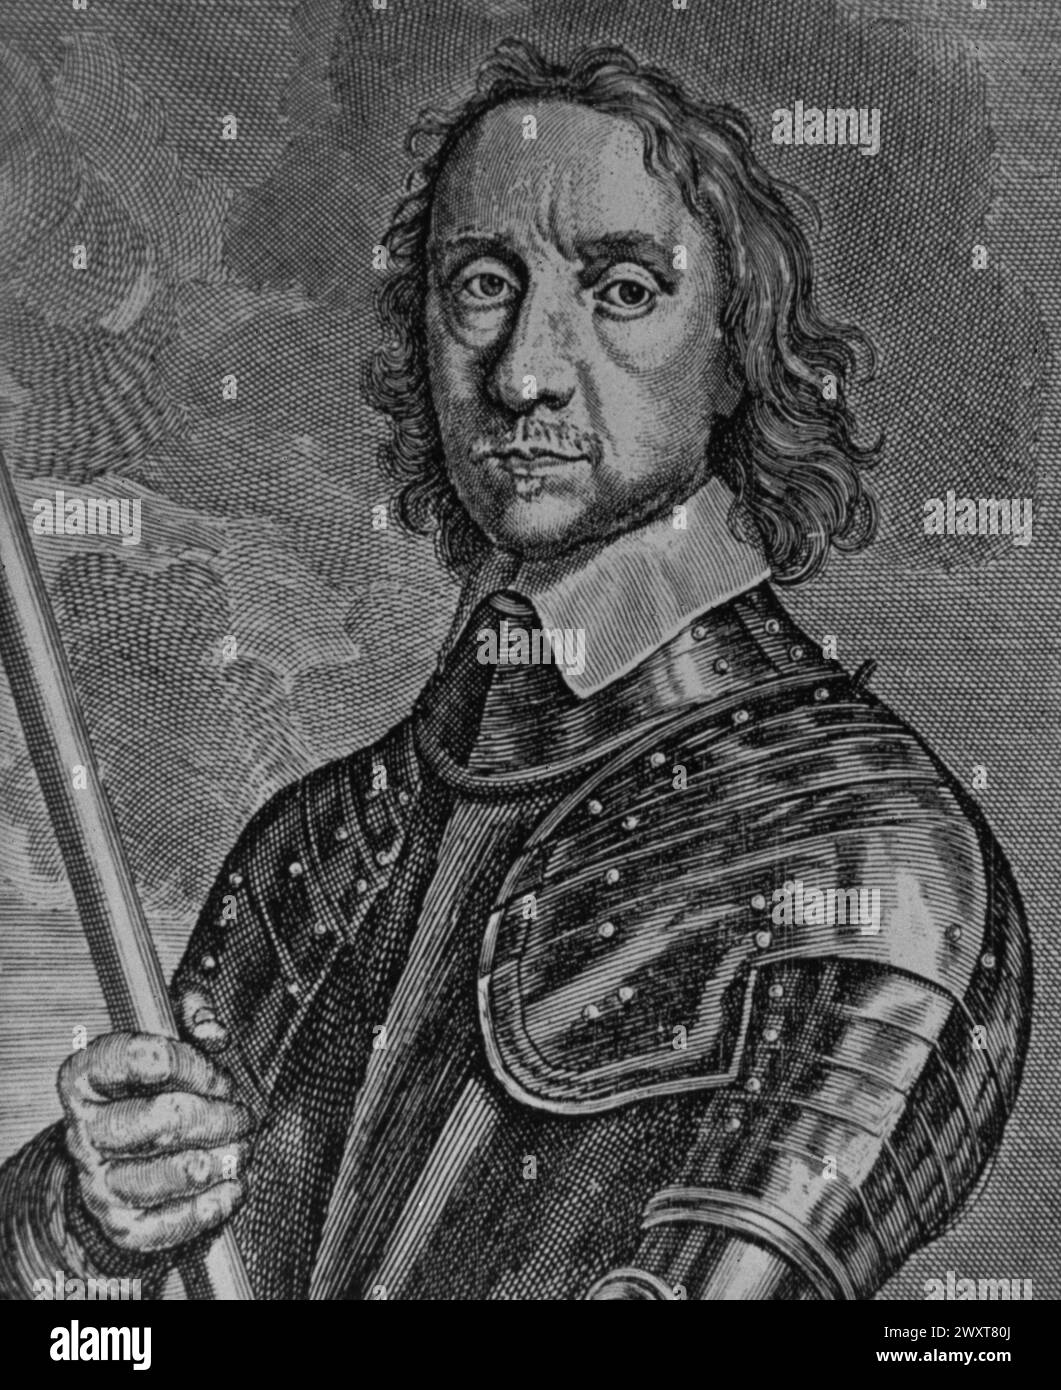 Ritratto di Oliver Cromwell, Lord Protettore d'Inghilterra, inciso su un dipinto di Conrad Woumans, Inghilterra XVII secolo Foto Stock